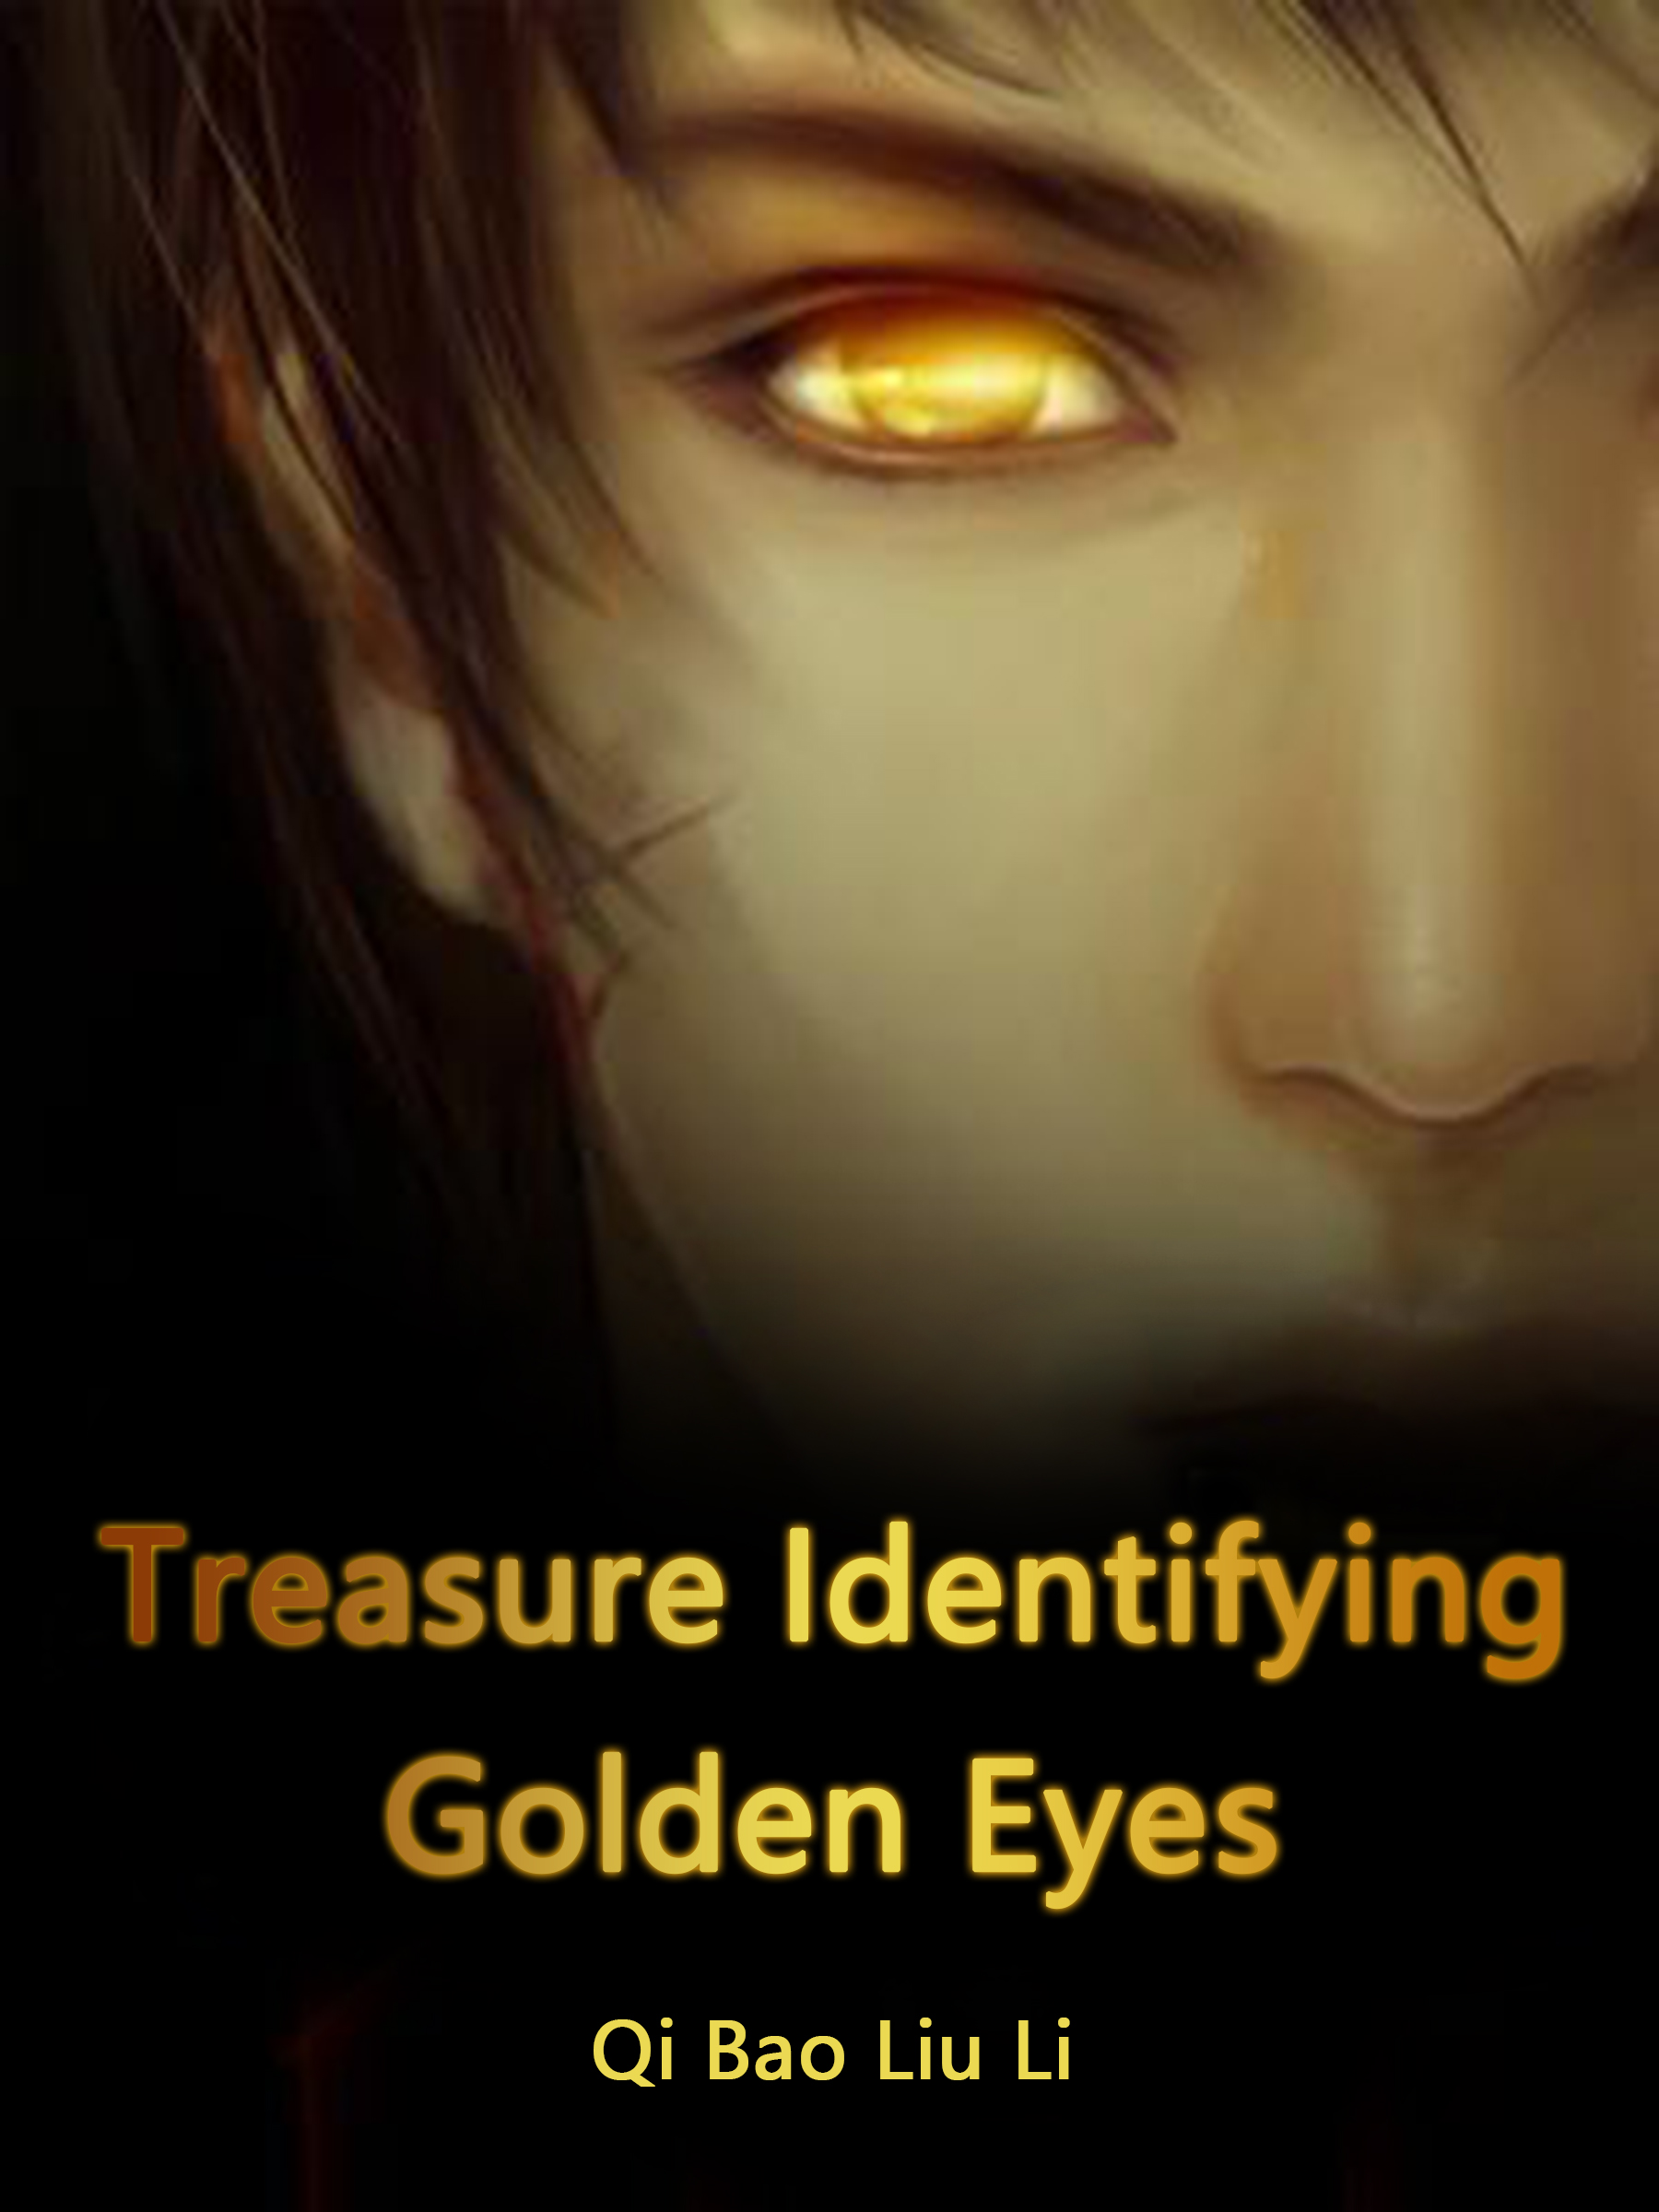 Treasure identifying Golden Eyes Novel Full Story